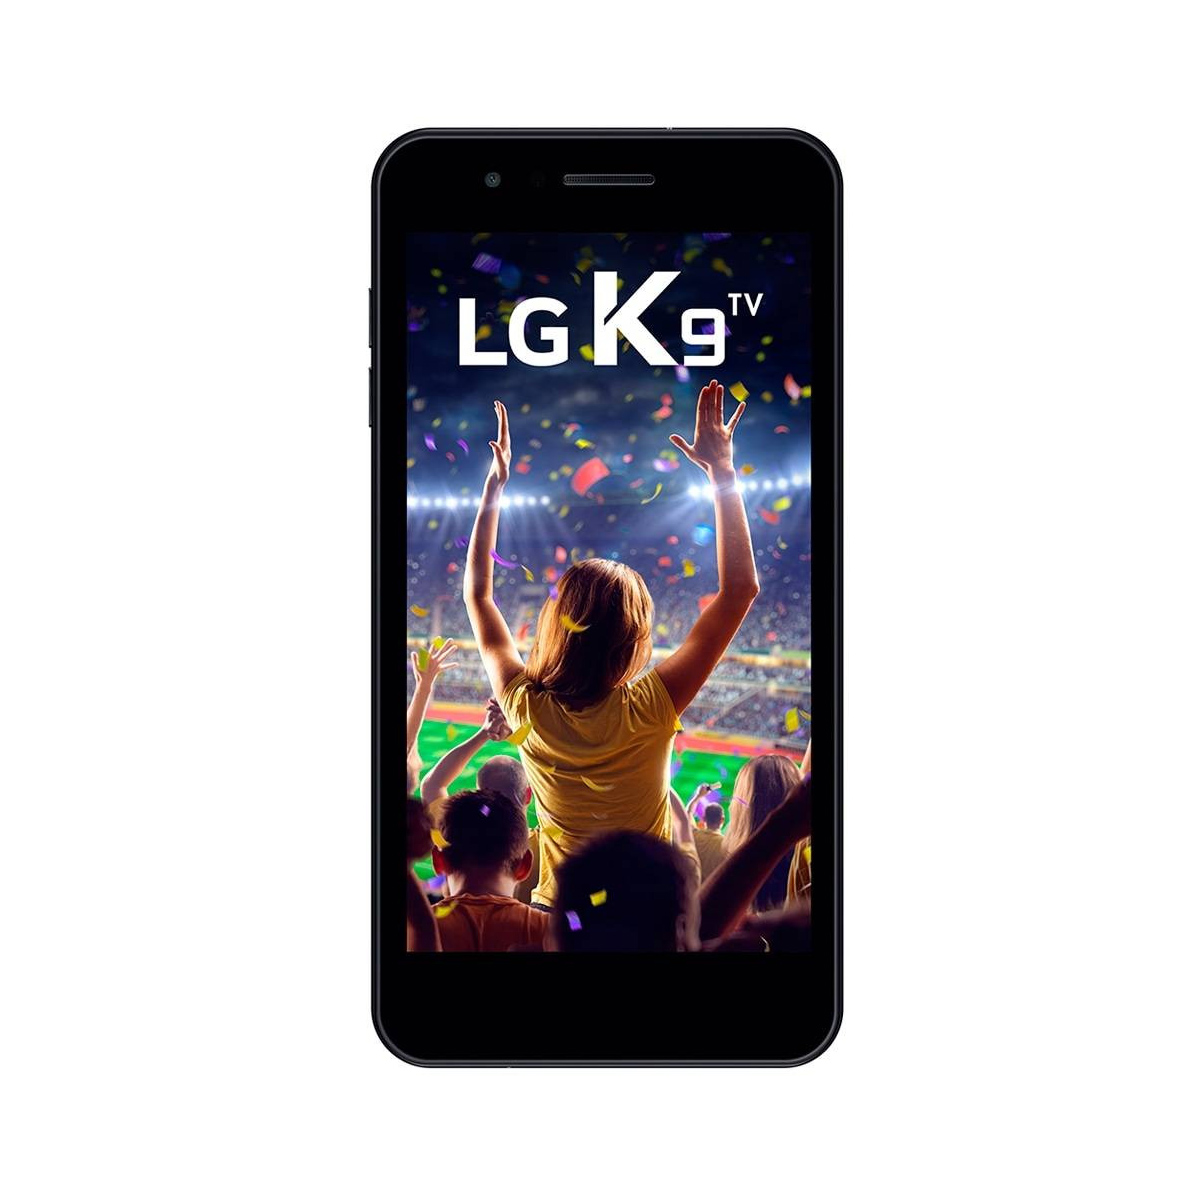 Smartphone Lg K9 TV X210 Tela 5.0' 16GB 4g 8mp - Mostruário